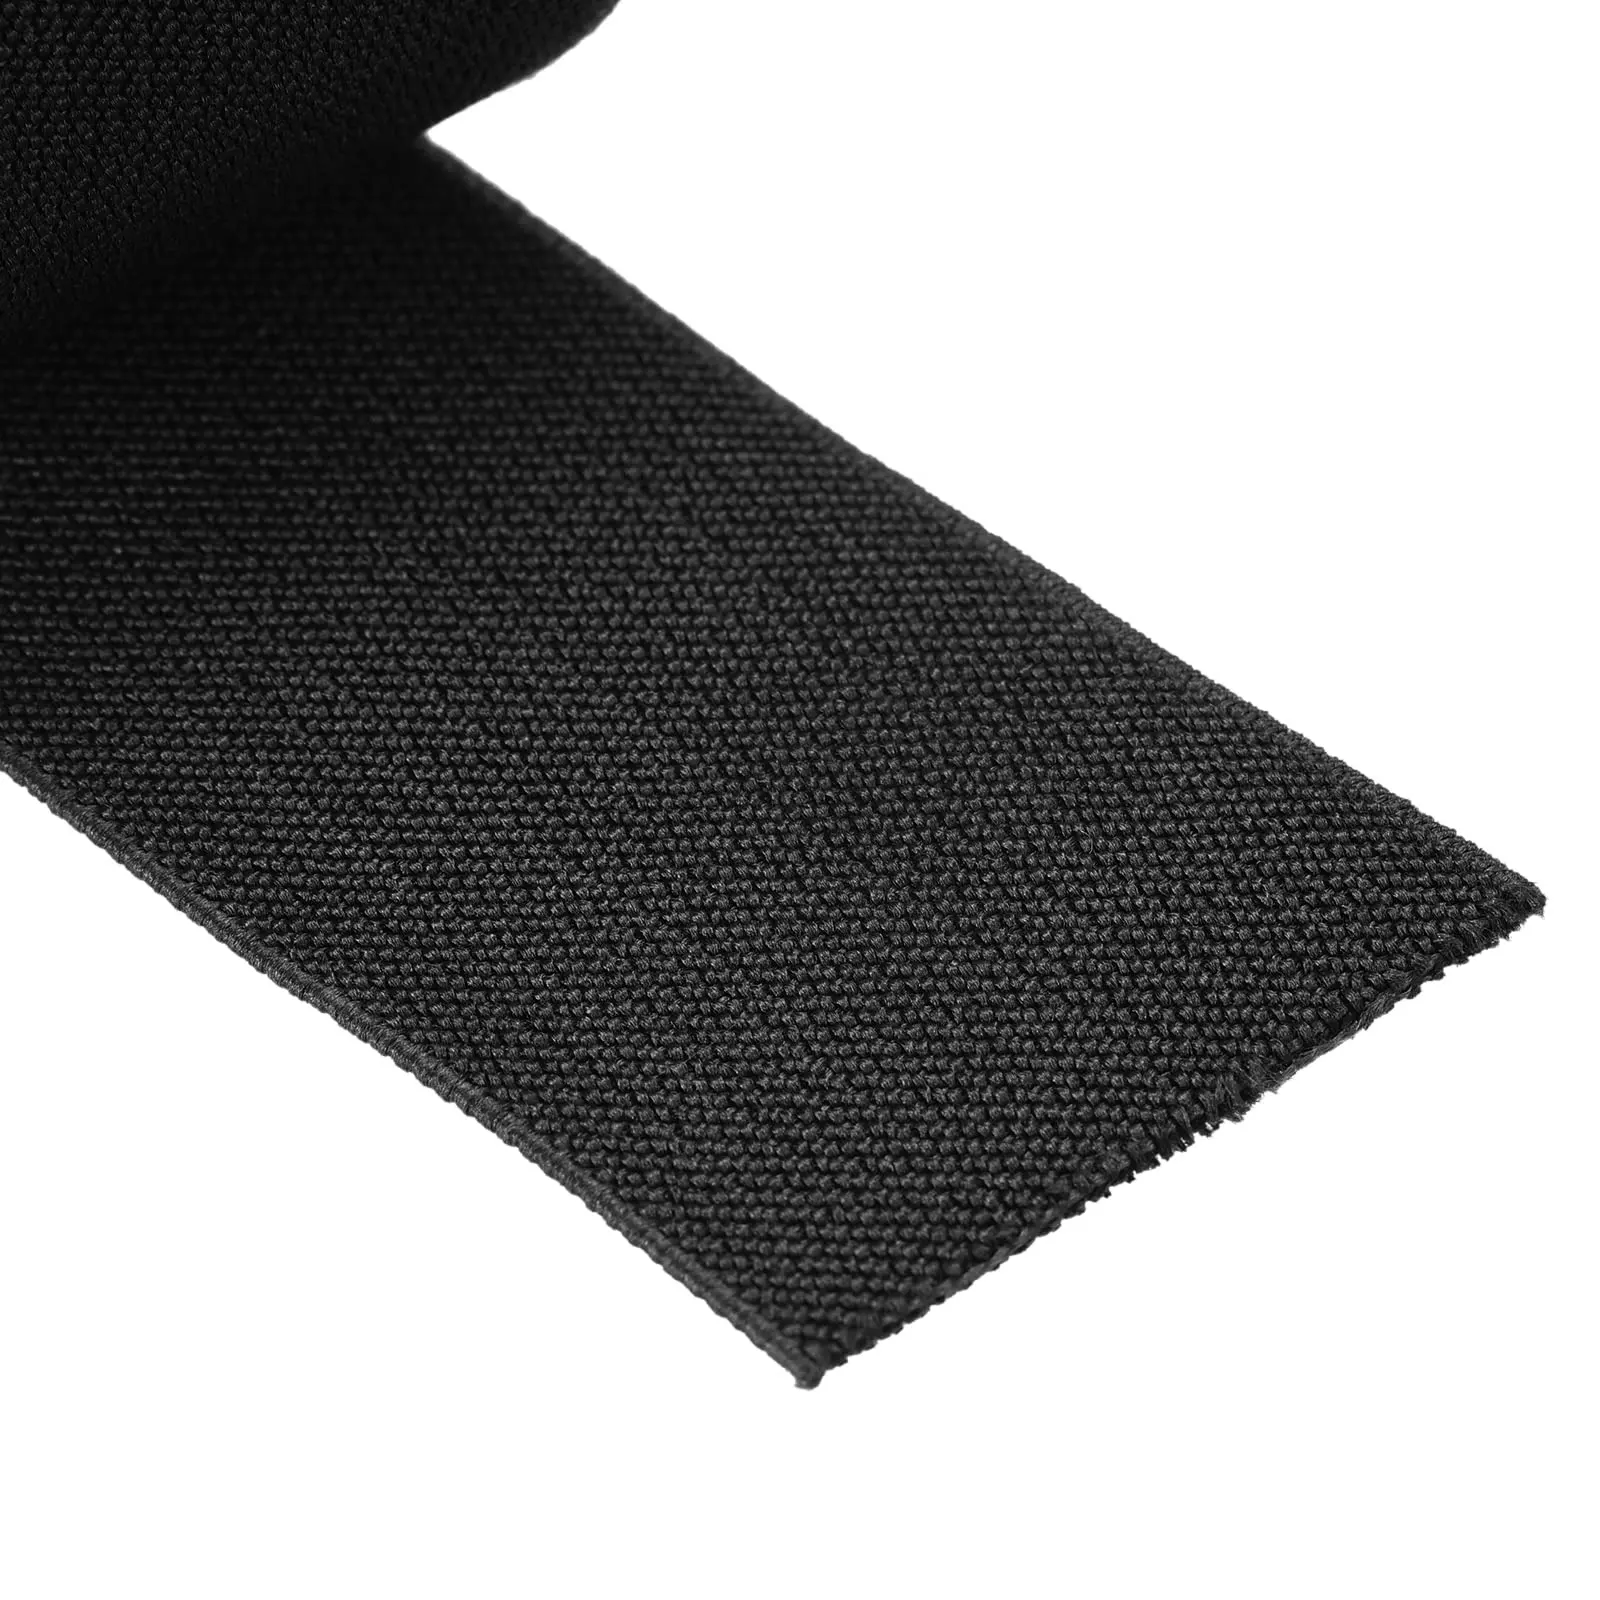 Bande Web élastique tressée en tricot doux de couleur noire pour coudre des accessoires de vêtement